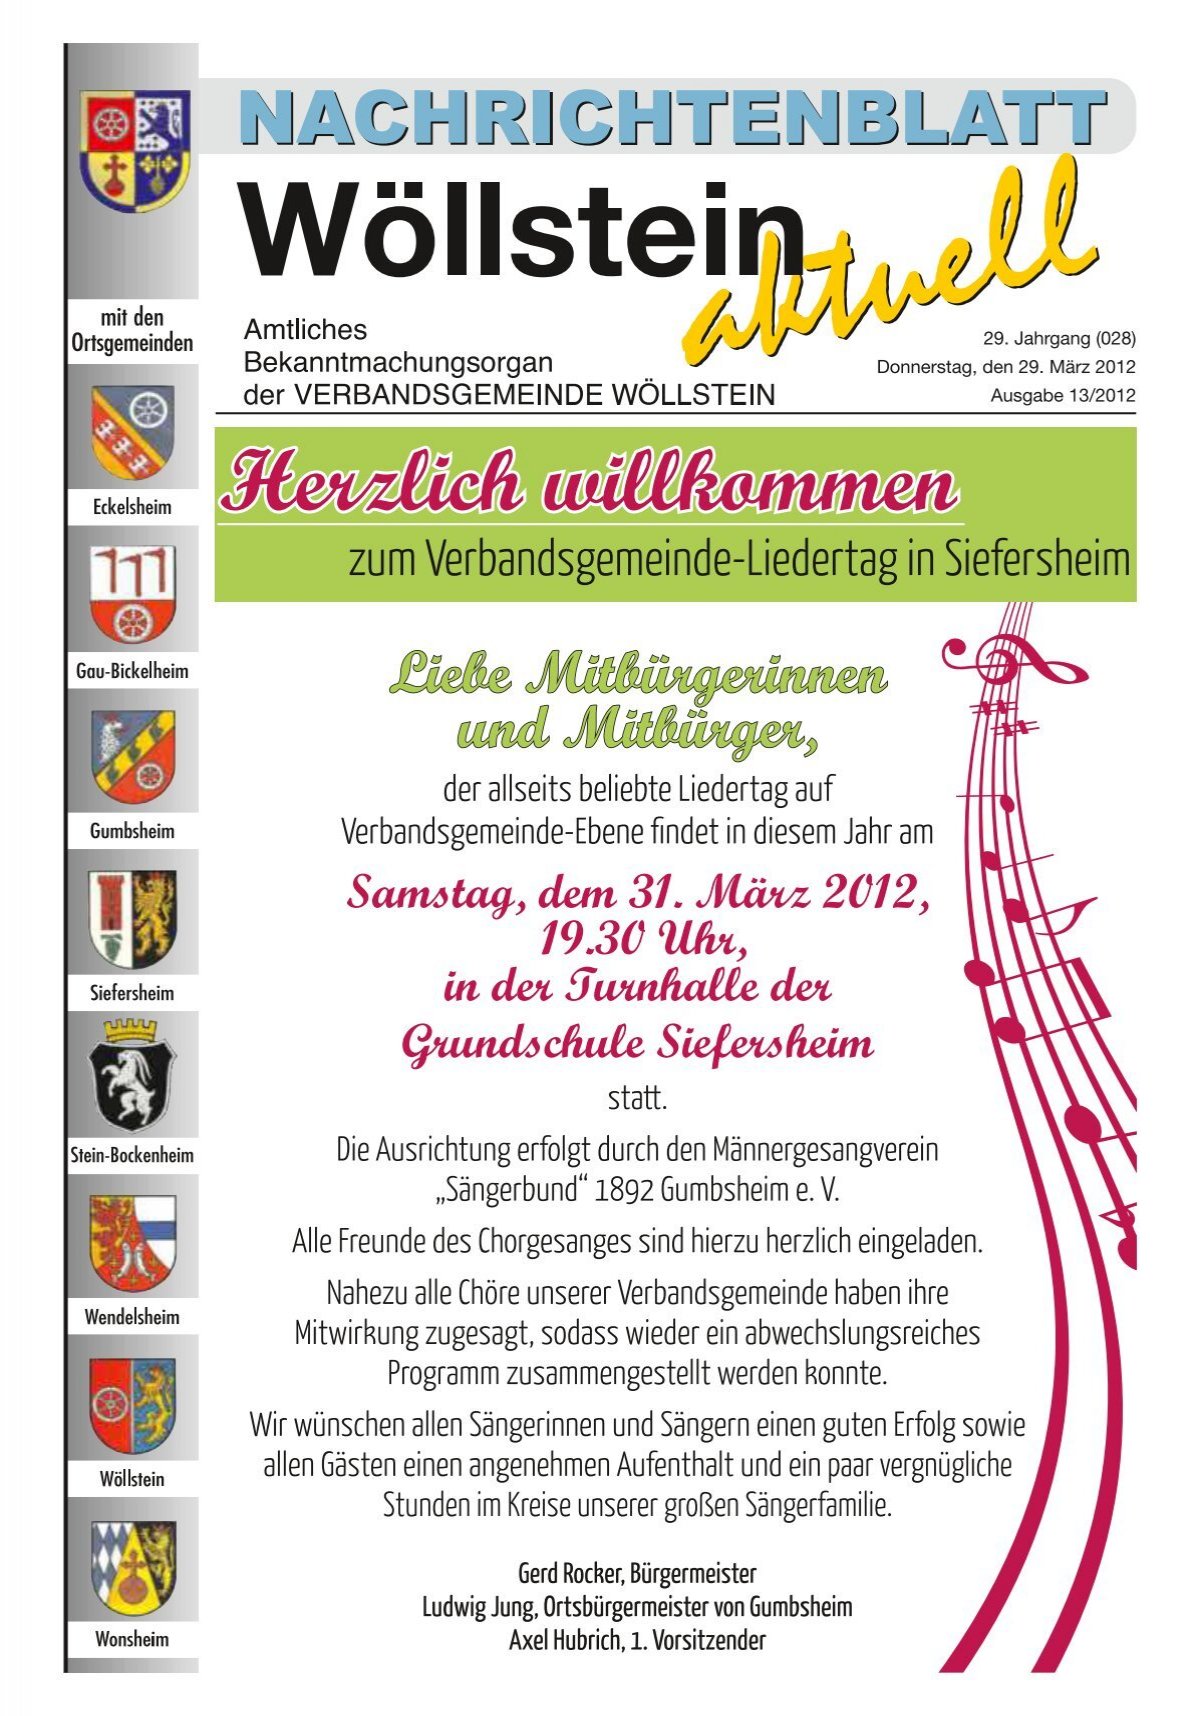 13.04.2012 jeweils von 9.00 - 12.00 Uhr - Verbandsgemeinde